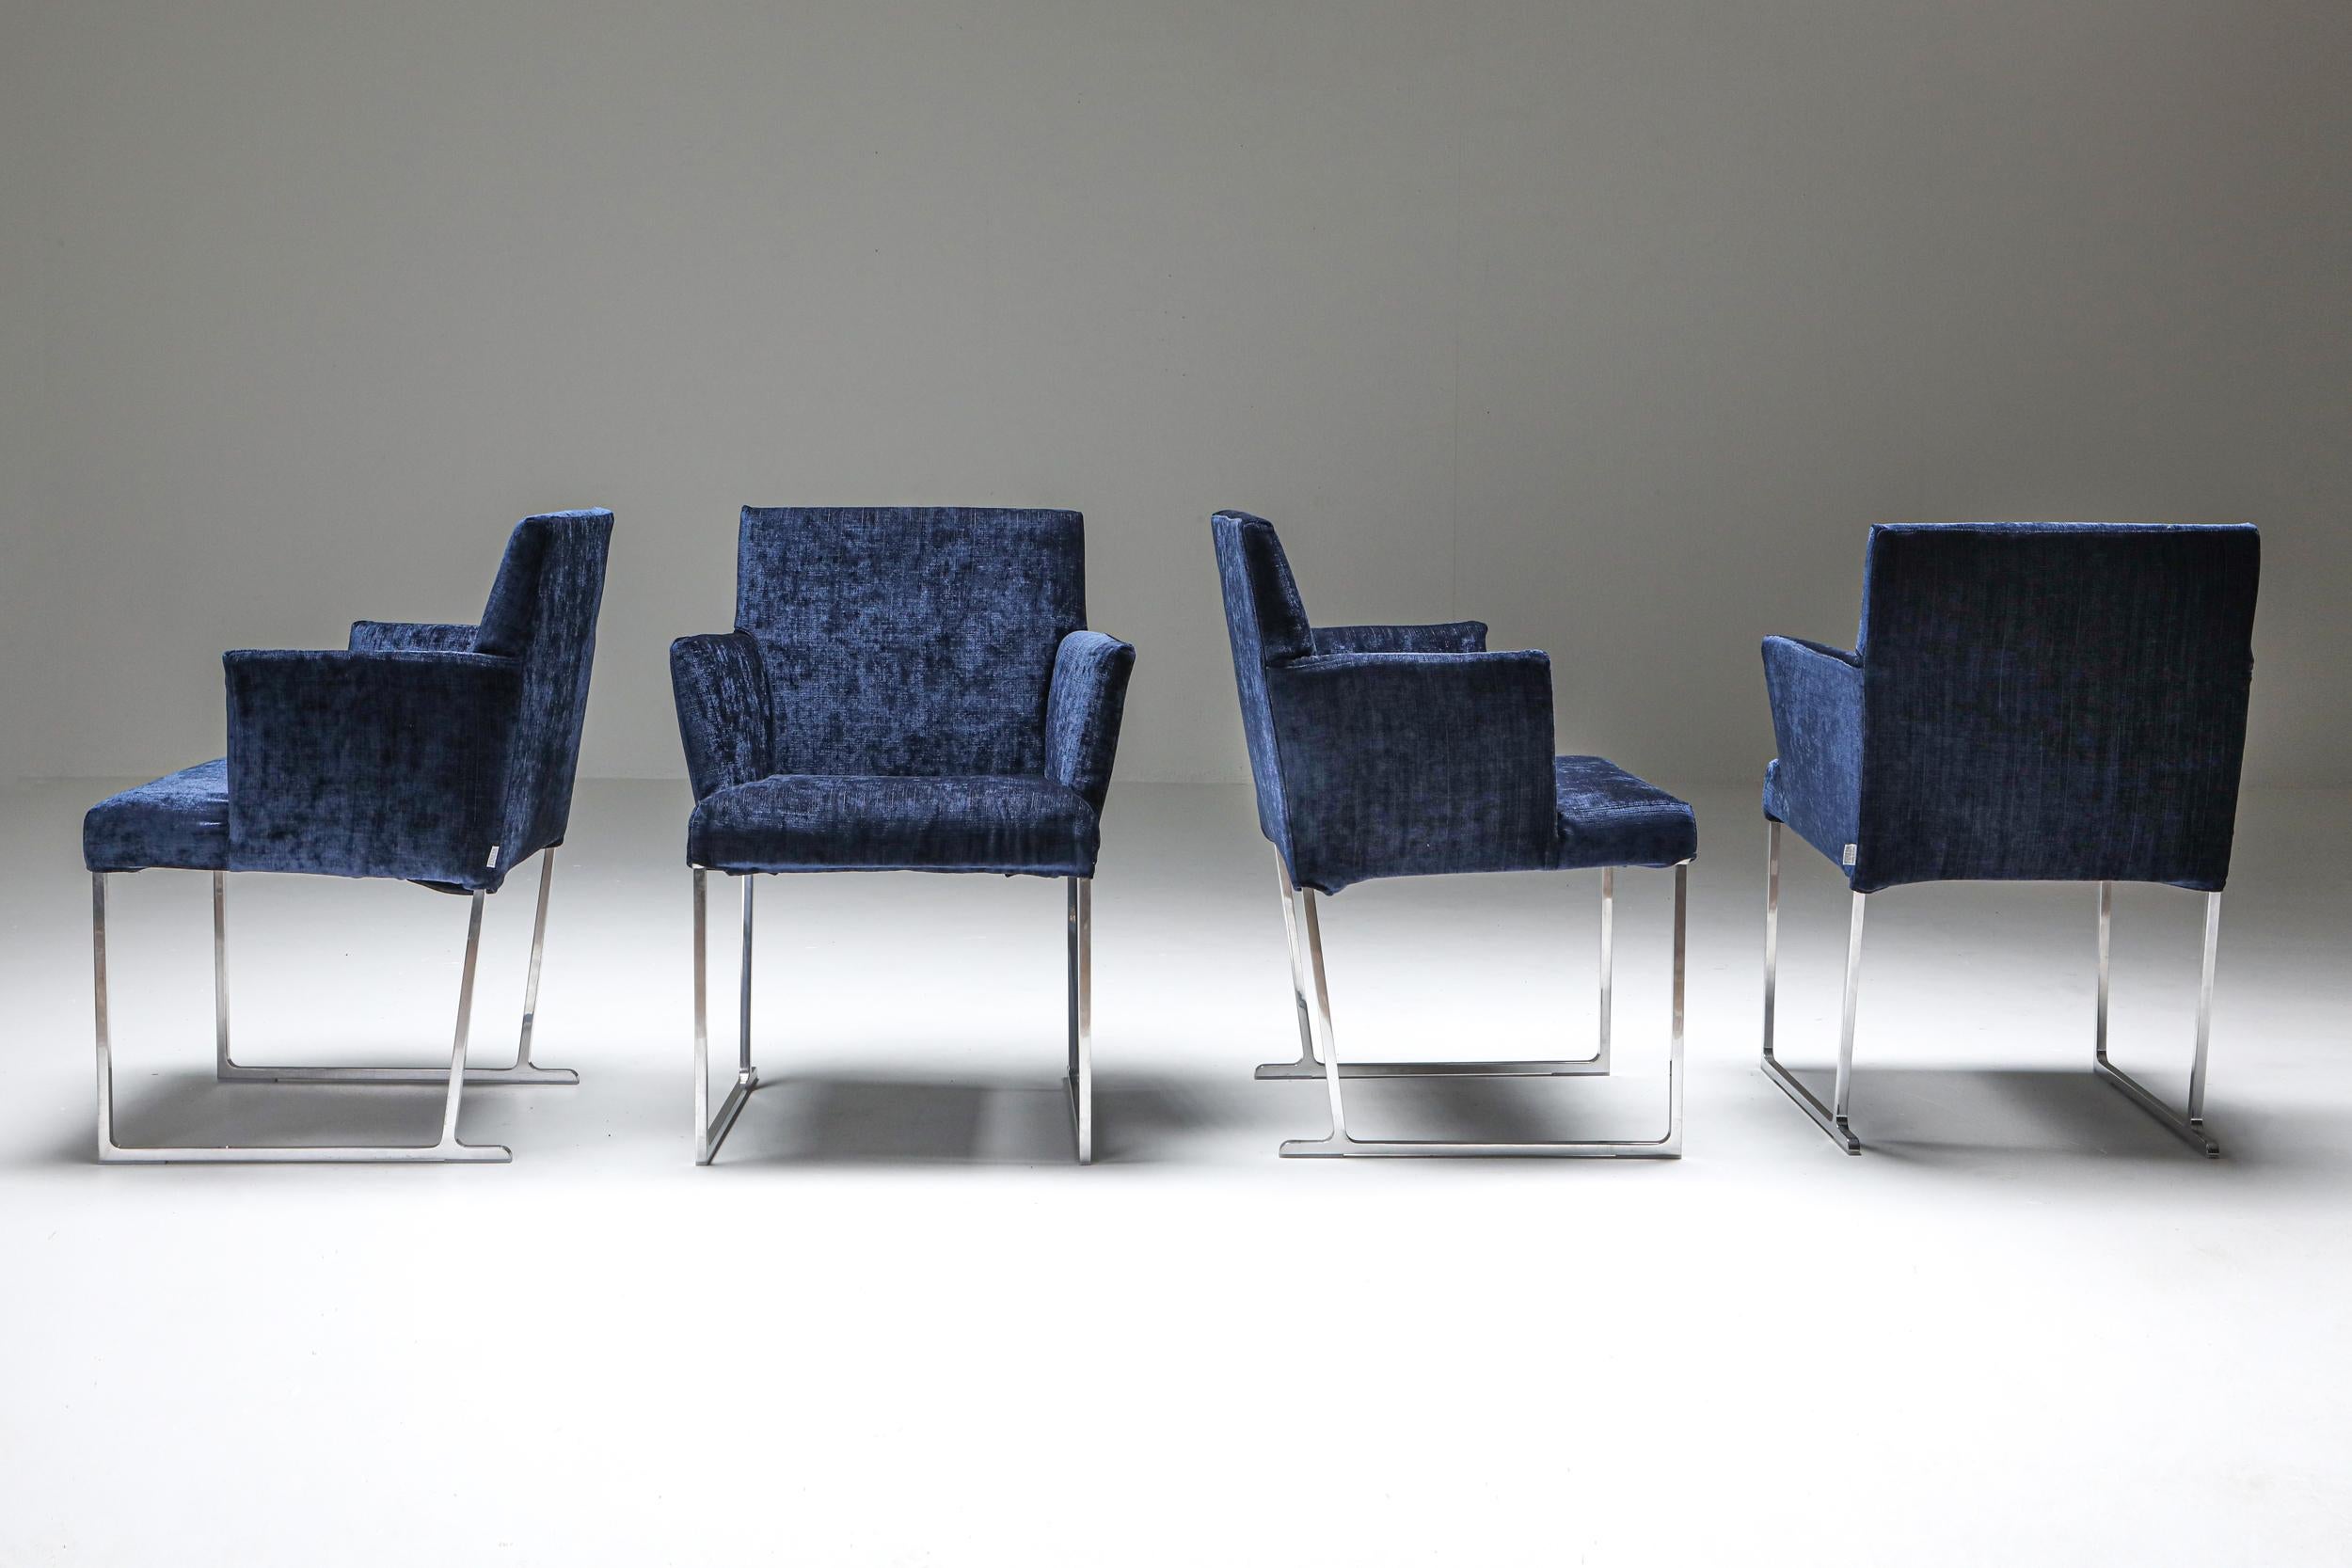 Modern Solo Chairs by Antonio Citterio for Maxalto